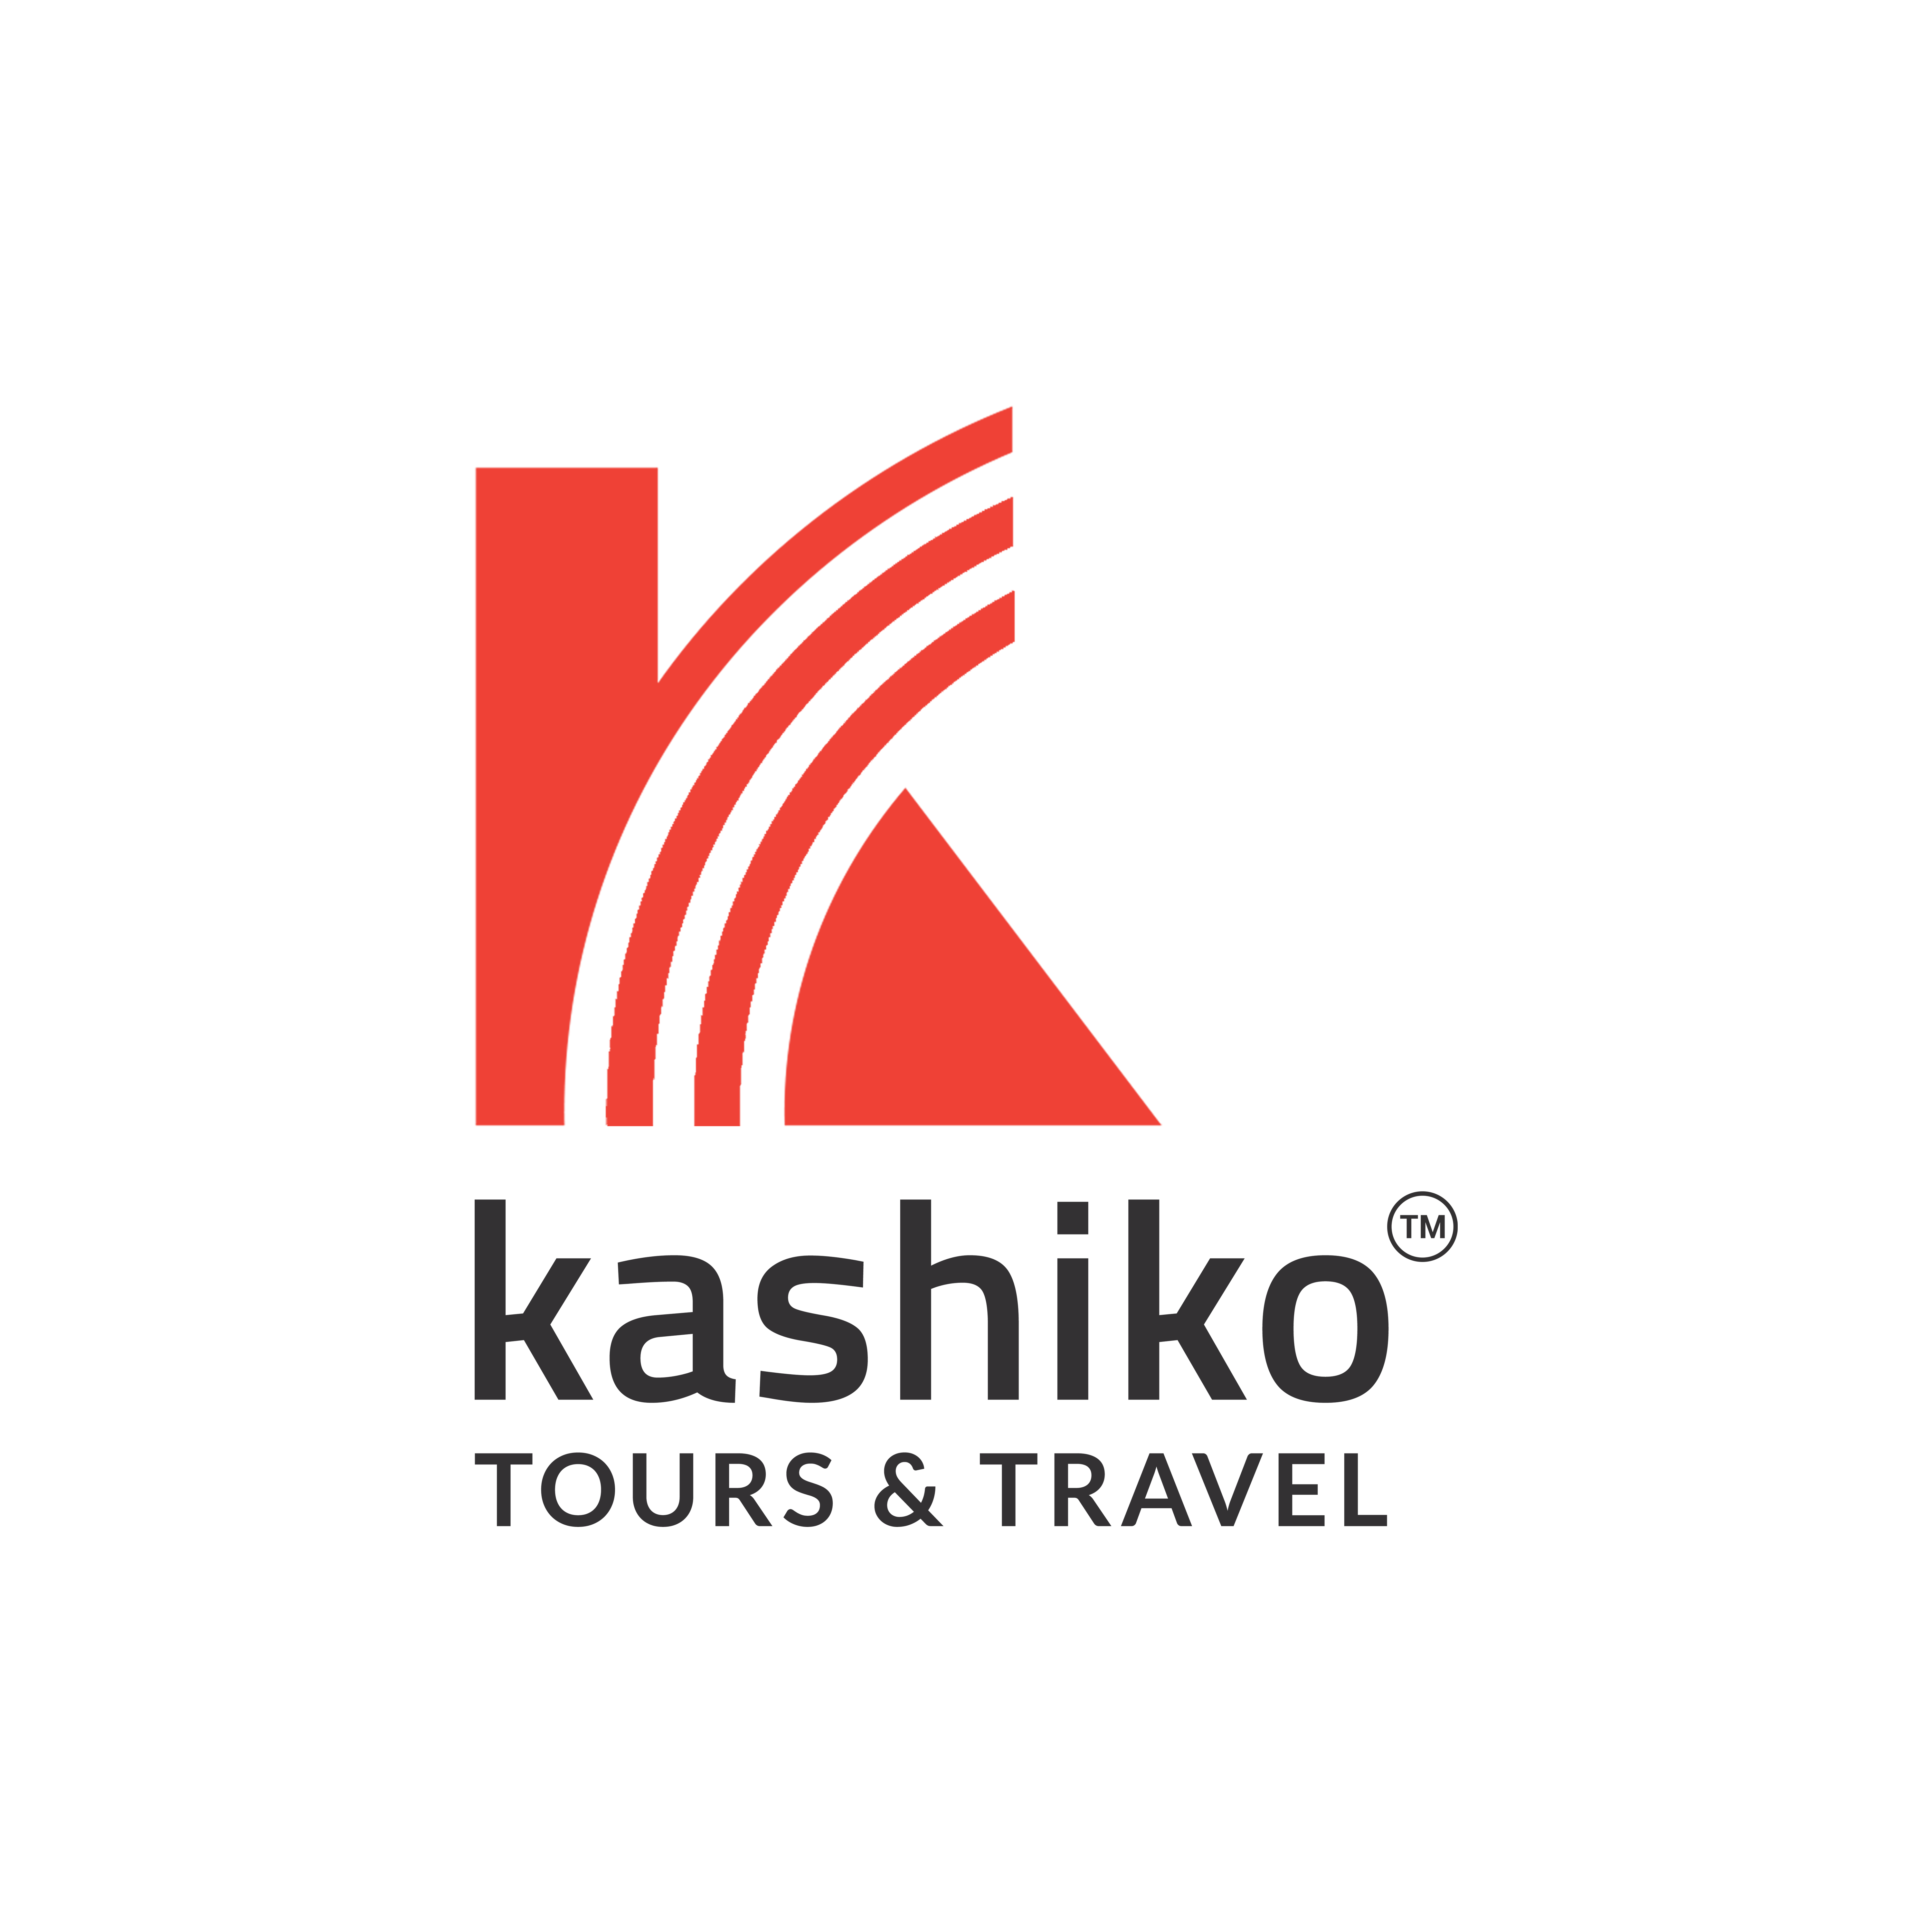 kashiko travels